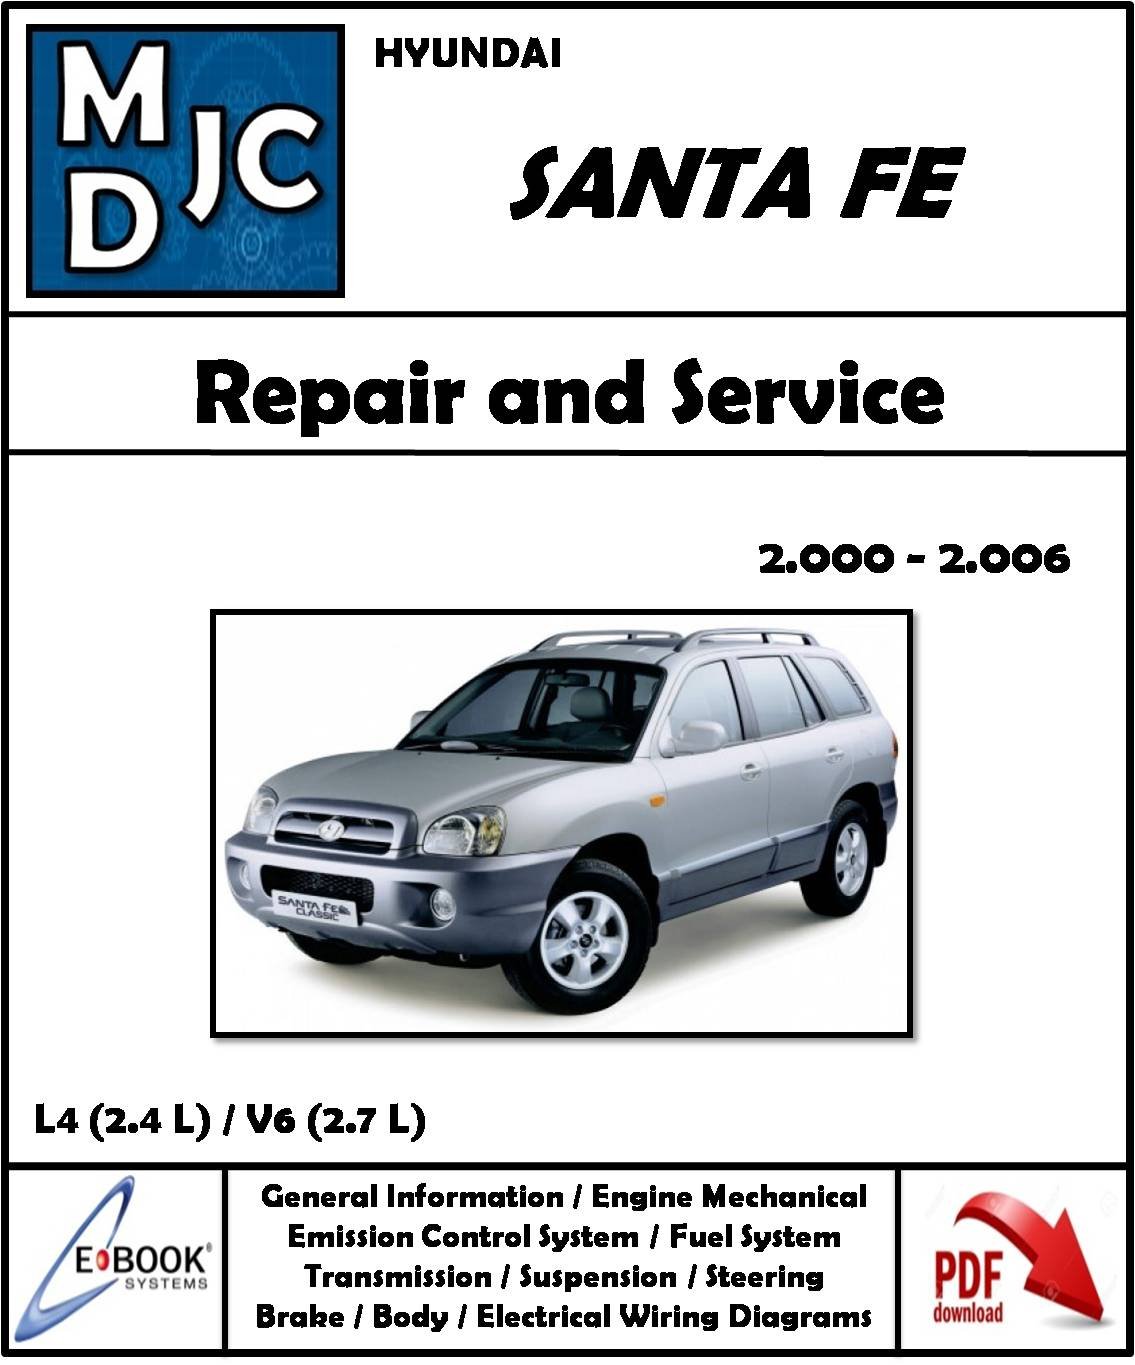 Hyundai Santa Fe 2000 - 2006